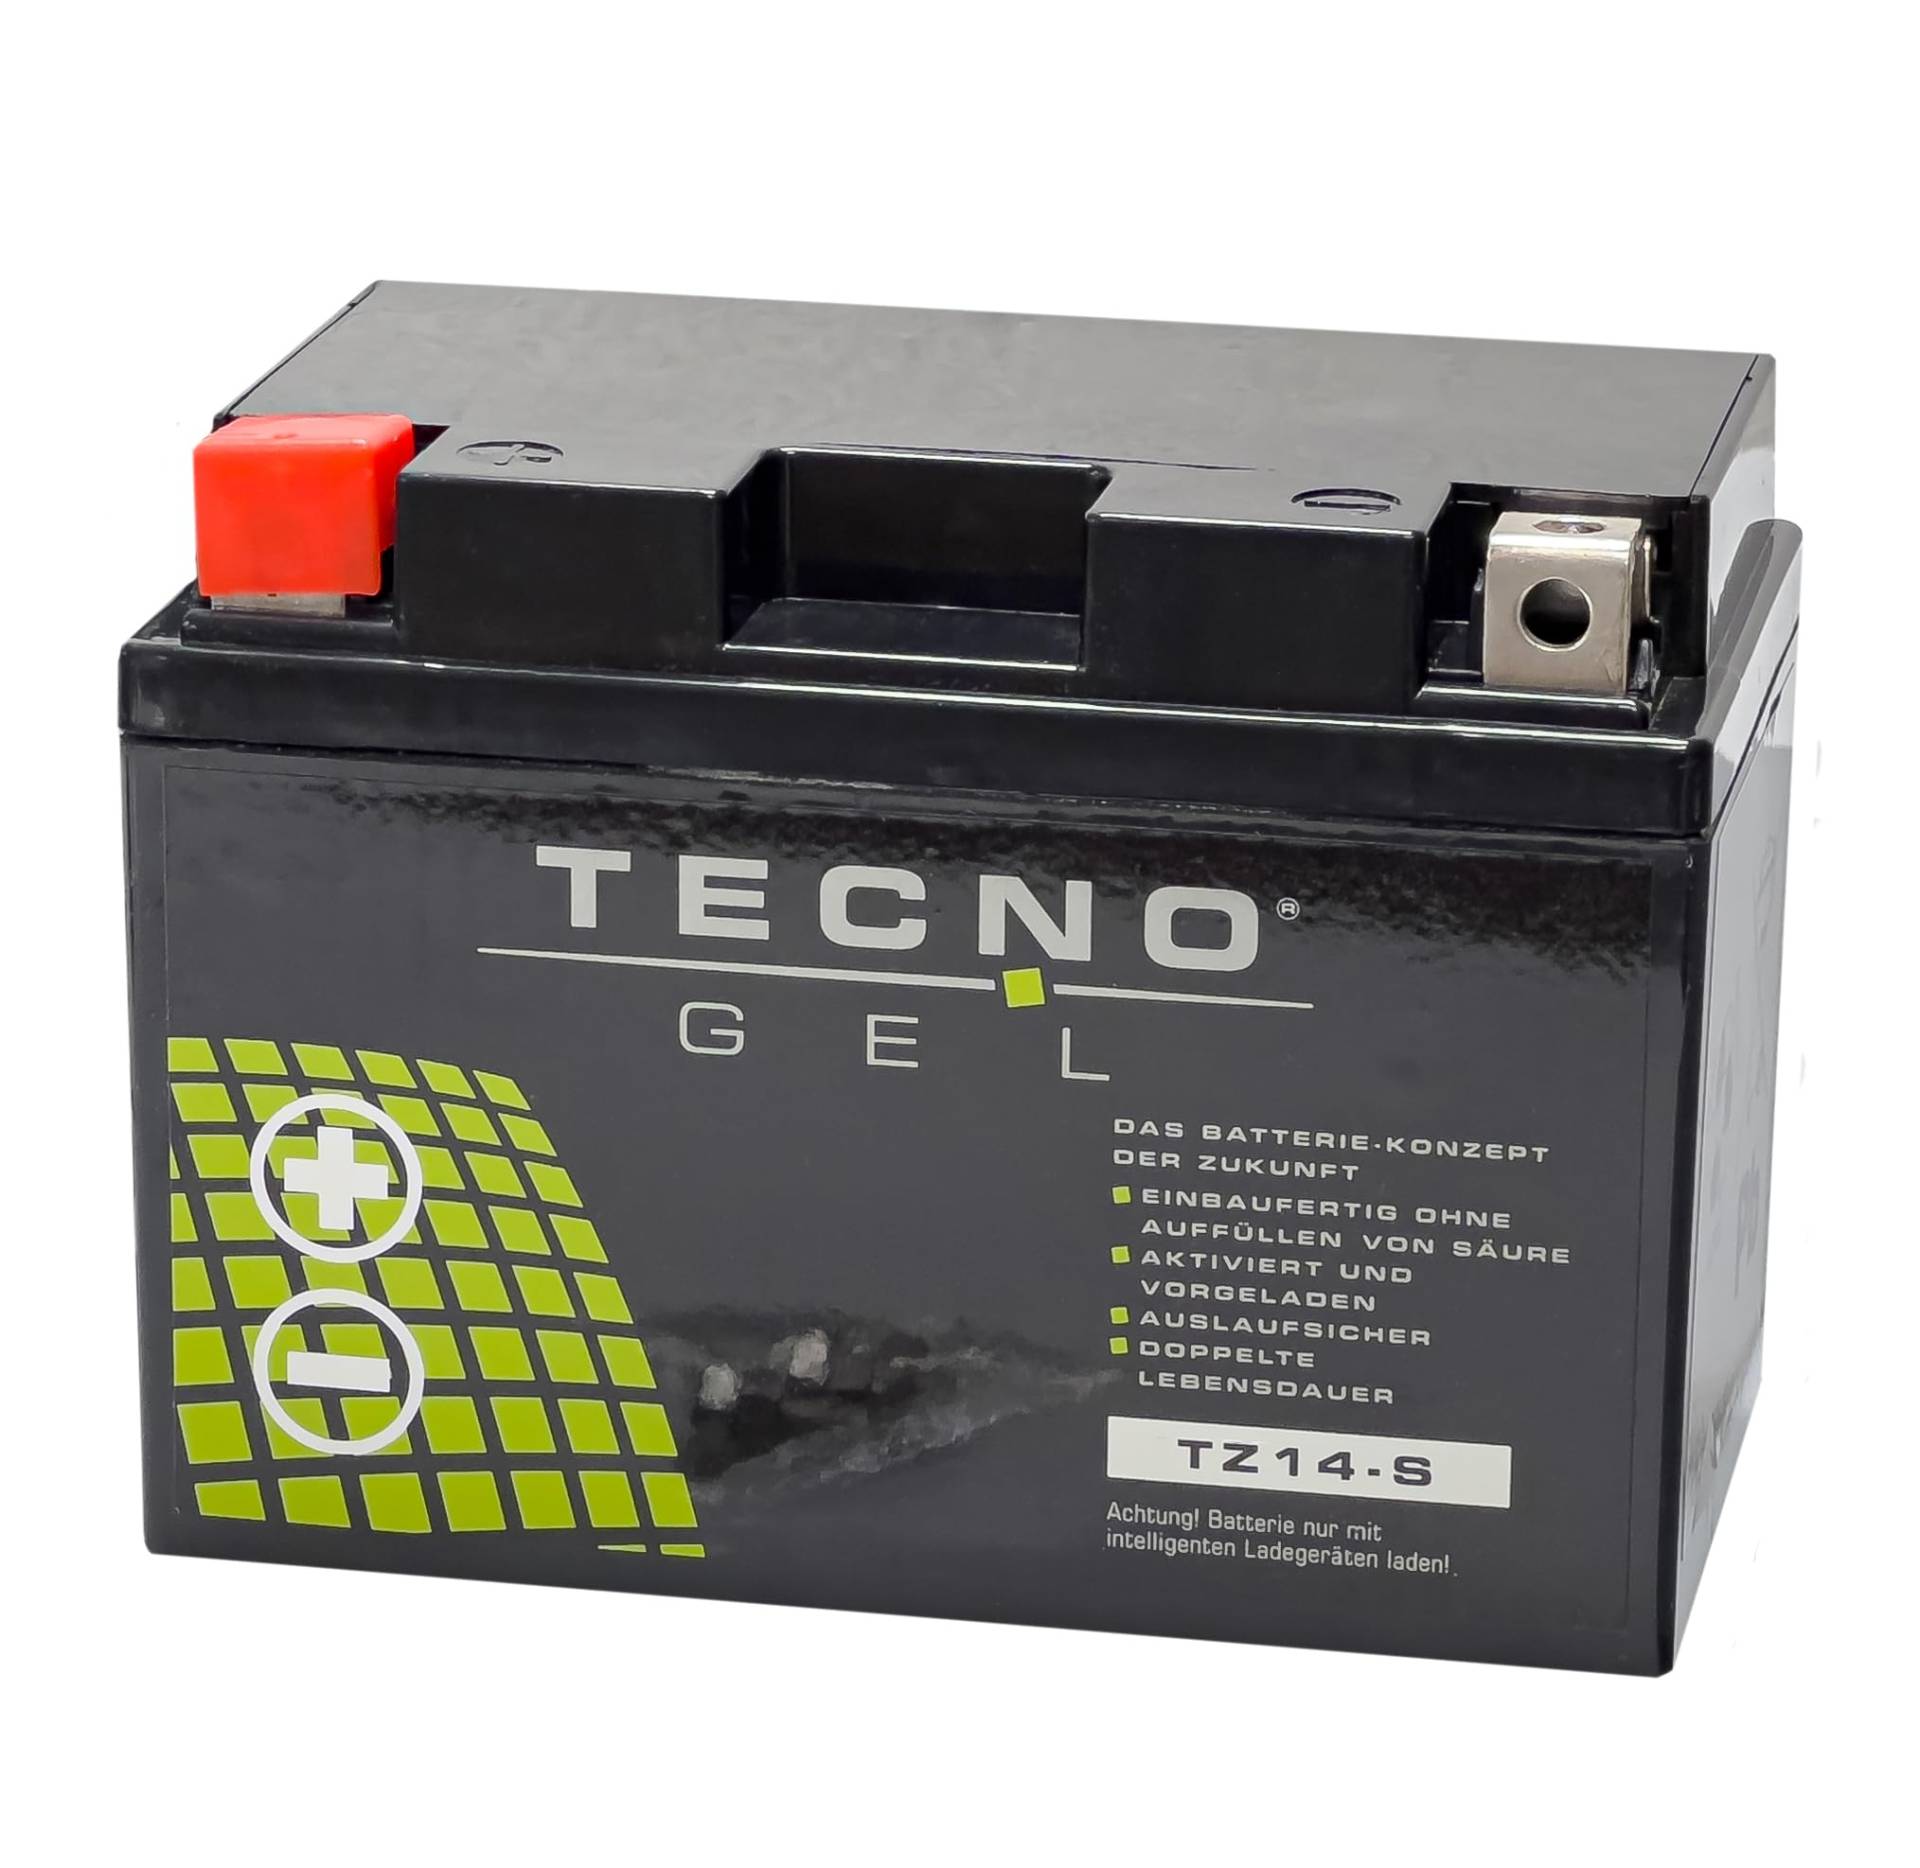 TECNO-GEL Motorrad-Batterie für YTZ14-S für HONDA NT 650/700 V 2005-2016, 12V Gel-Batterie 11,3Ah (DIN 51101), 151x87x110 mm von Wirth-Federn